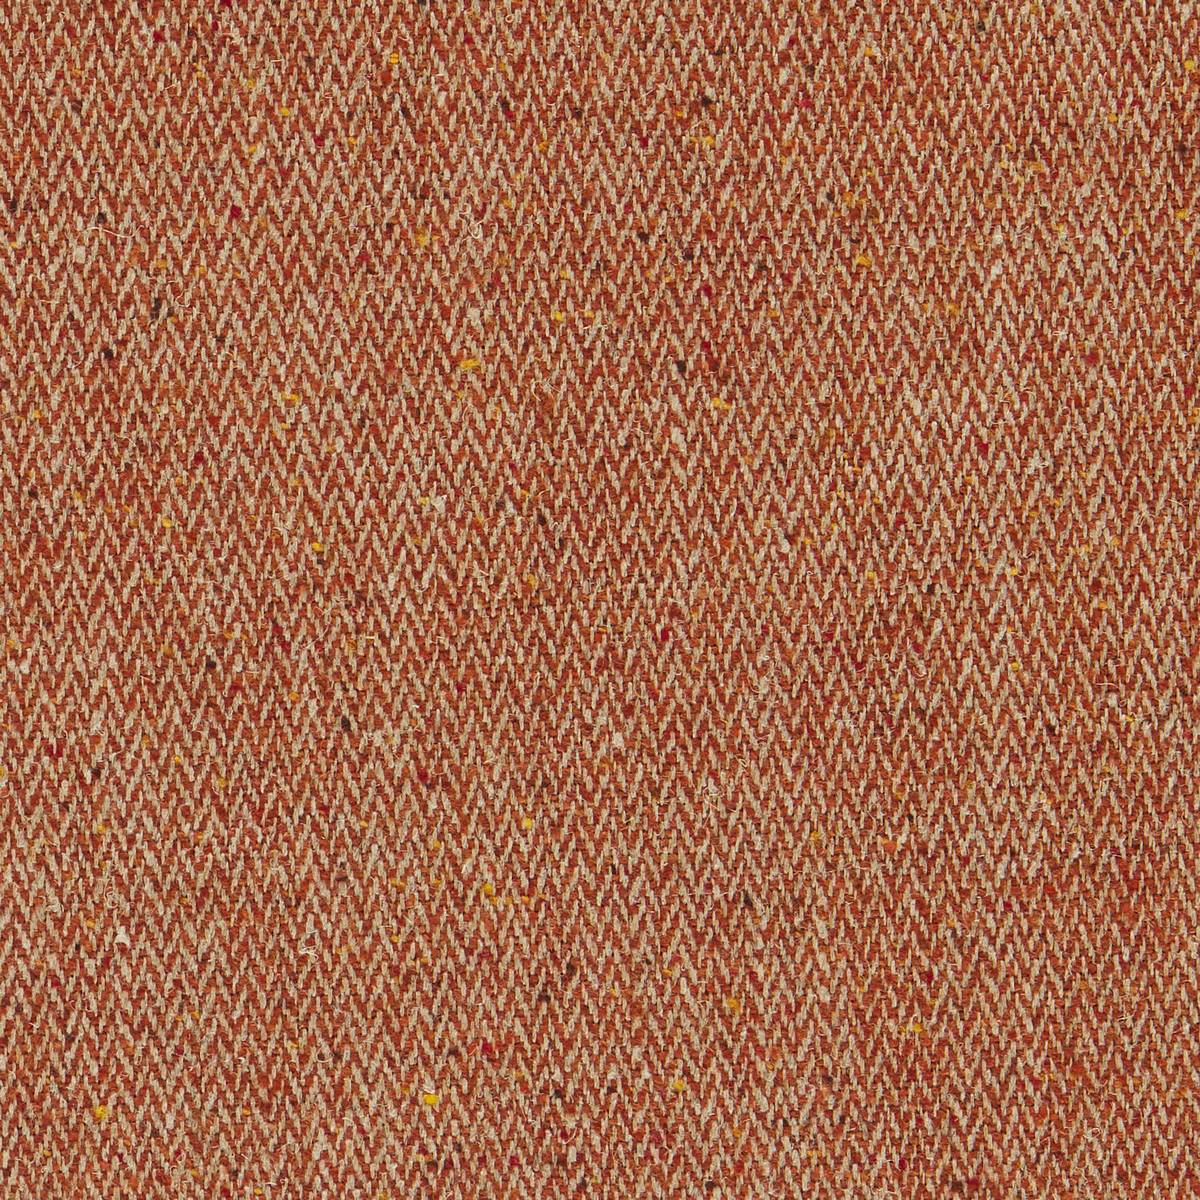 Brunswick Saffron Fabric by William Morris & Co.